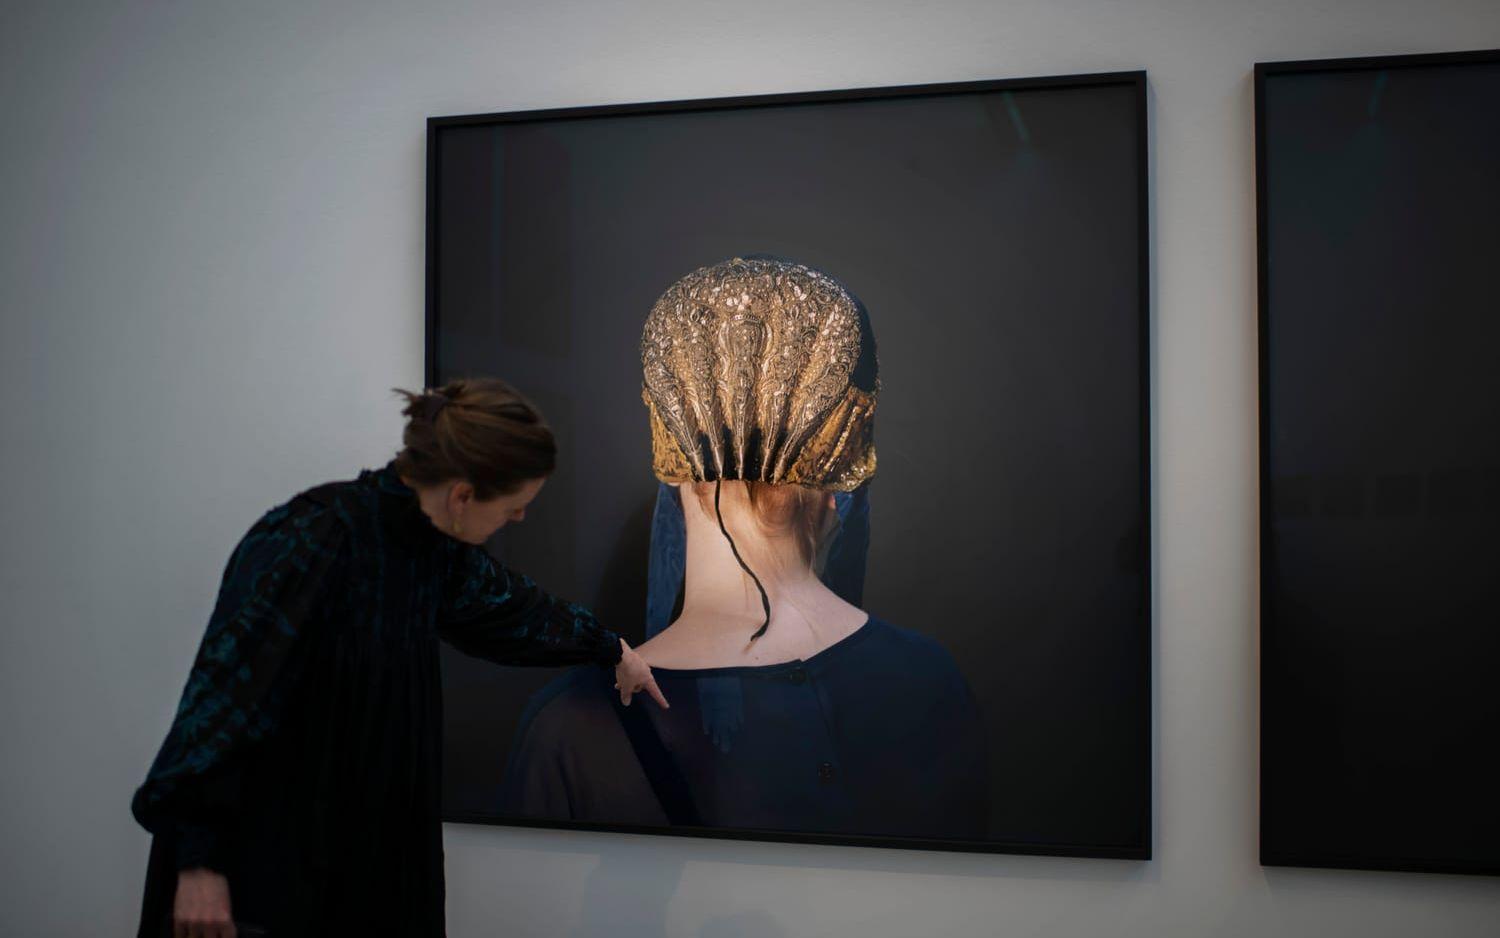 Länge har Trine Søndergaard intresserat sig för historiska textilier, och inkluderat dem i sin konst. Här visar hon ett av flera fotografier där unga tjejer i modekläder från 2000-talet porträtterats i broderade guldhättor som täcker håret. 